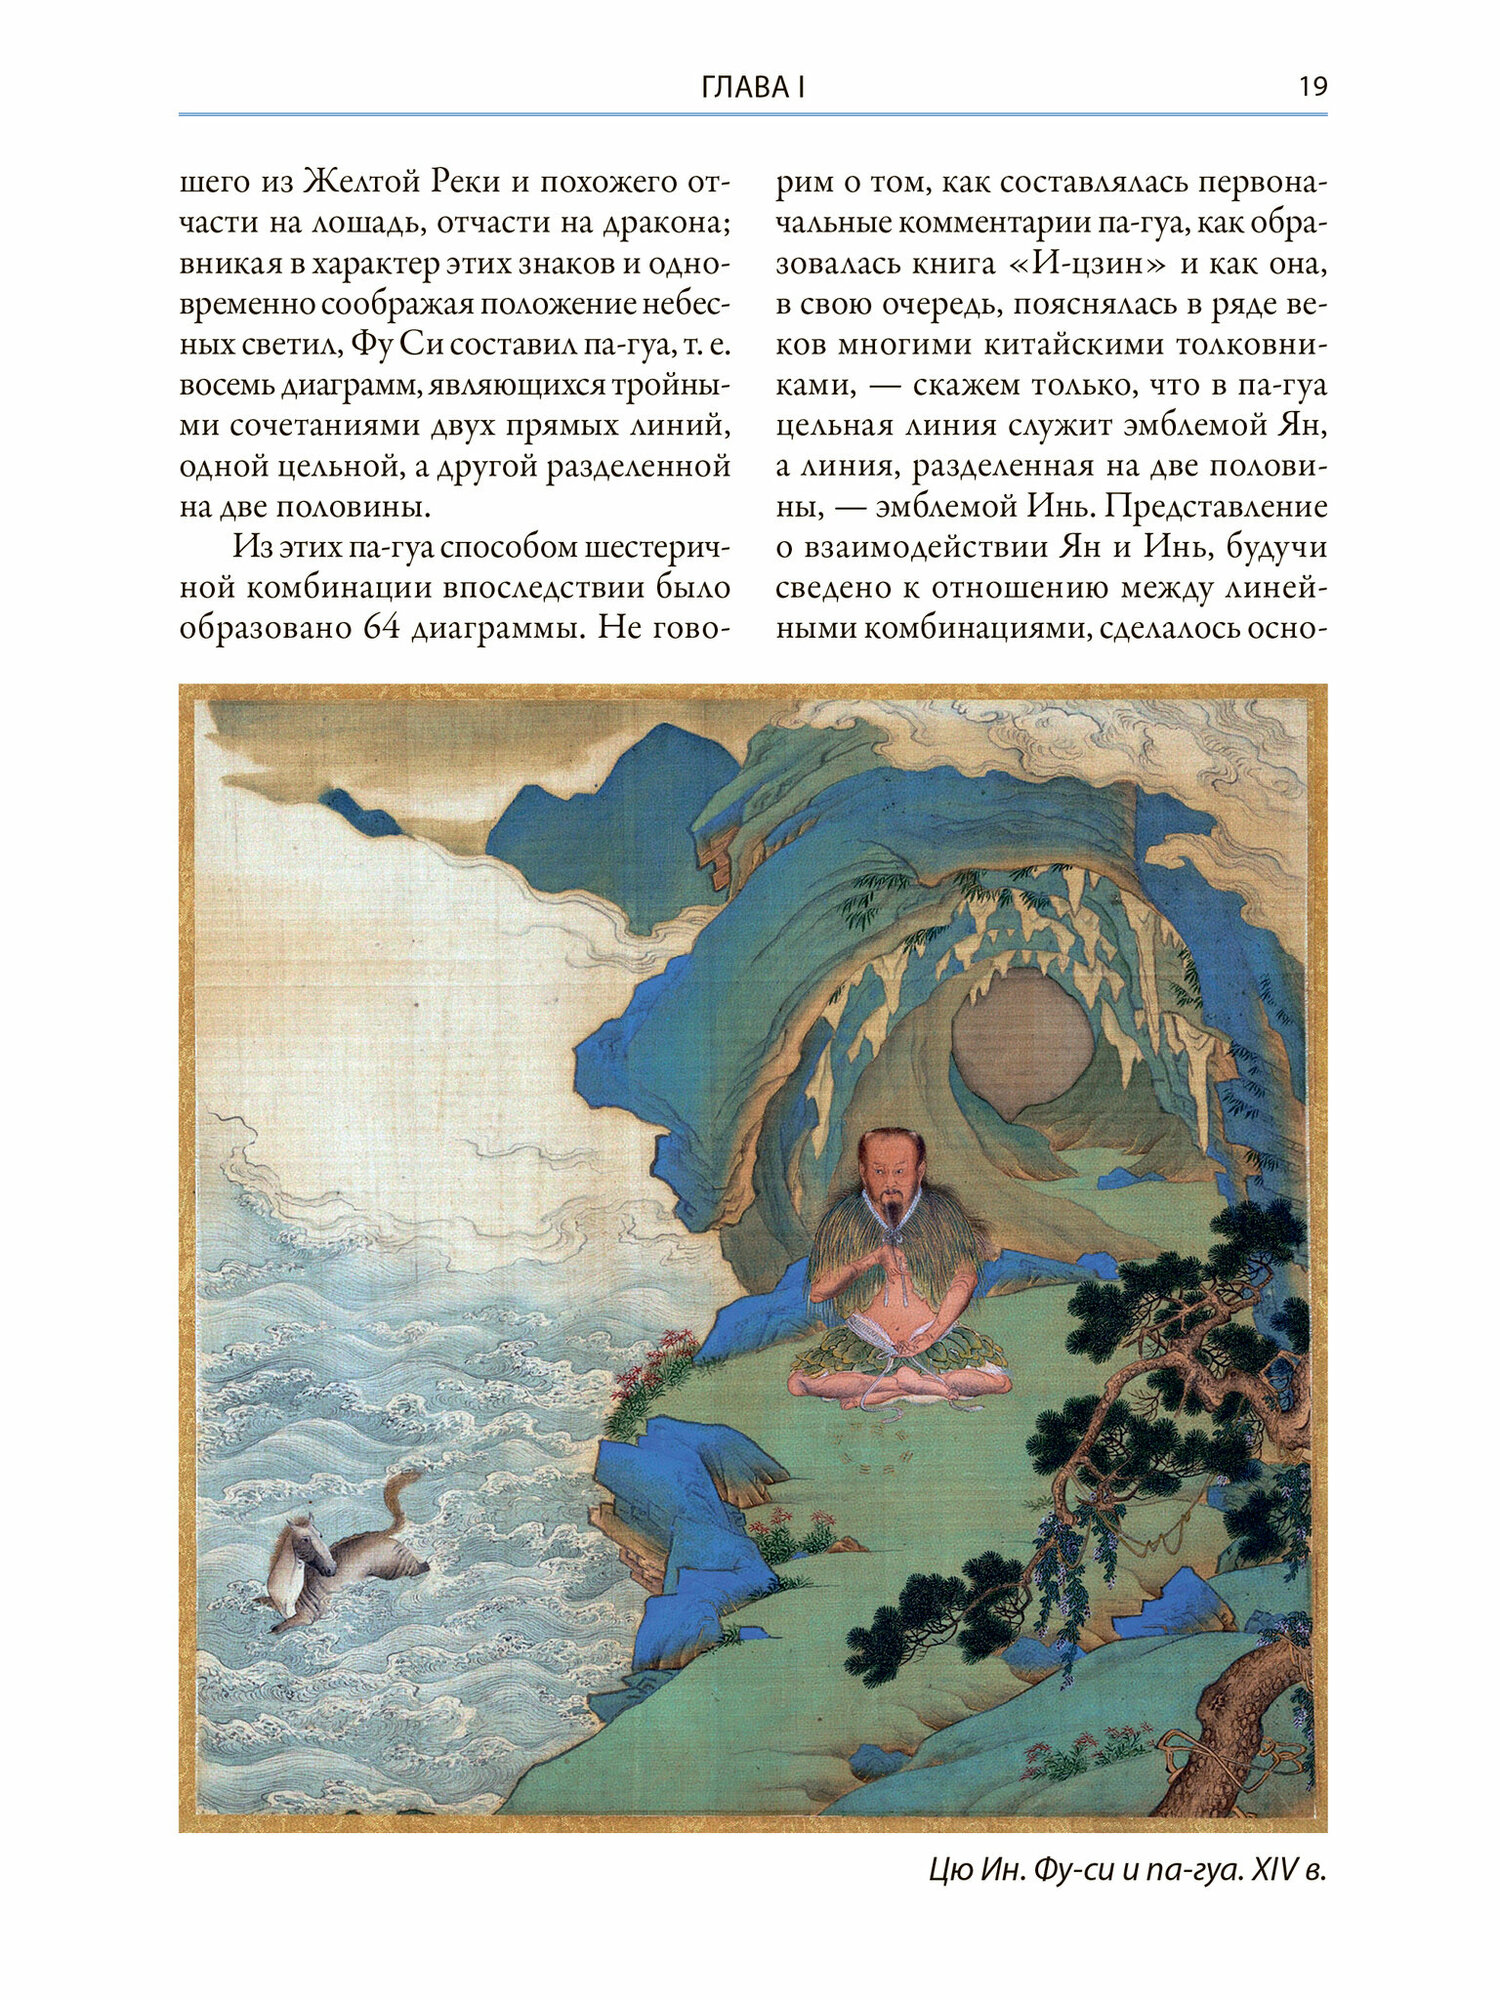 Мифы Древнего Китая Мифические воззрения и мифы китайцев - фото №13